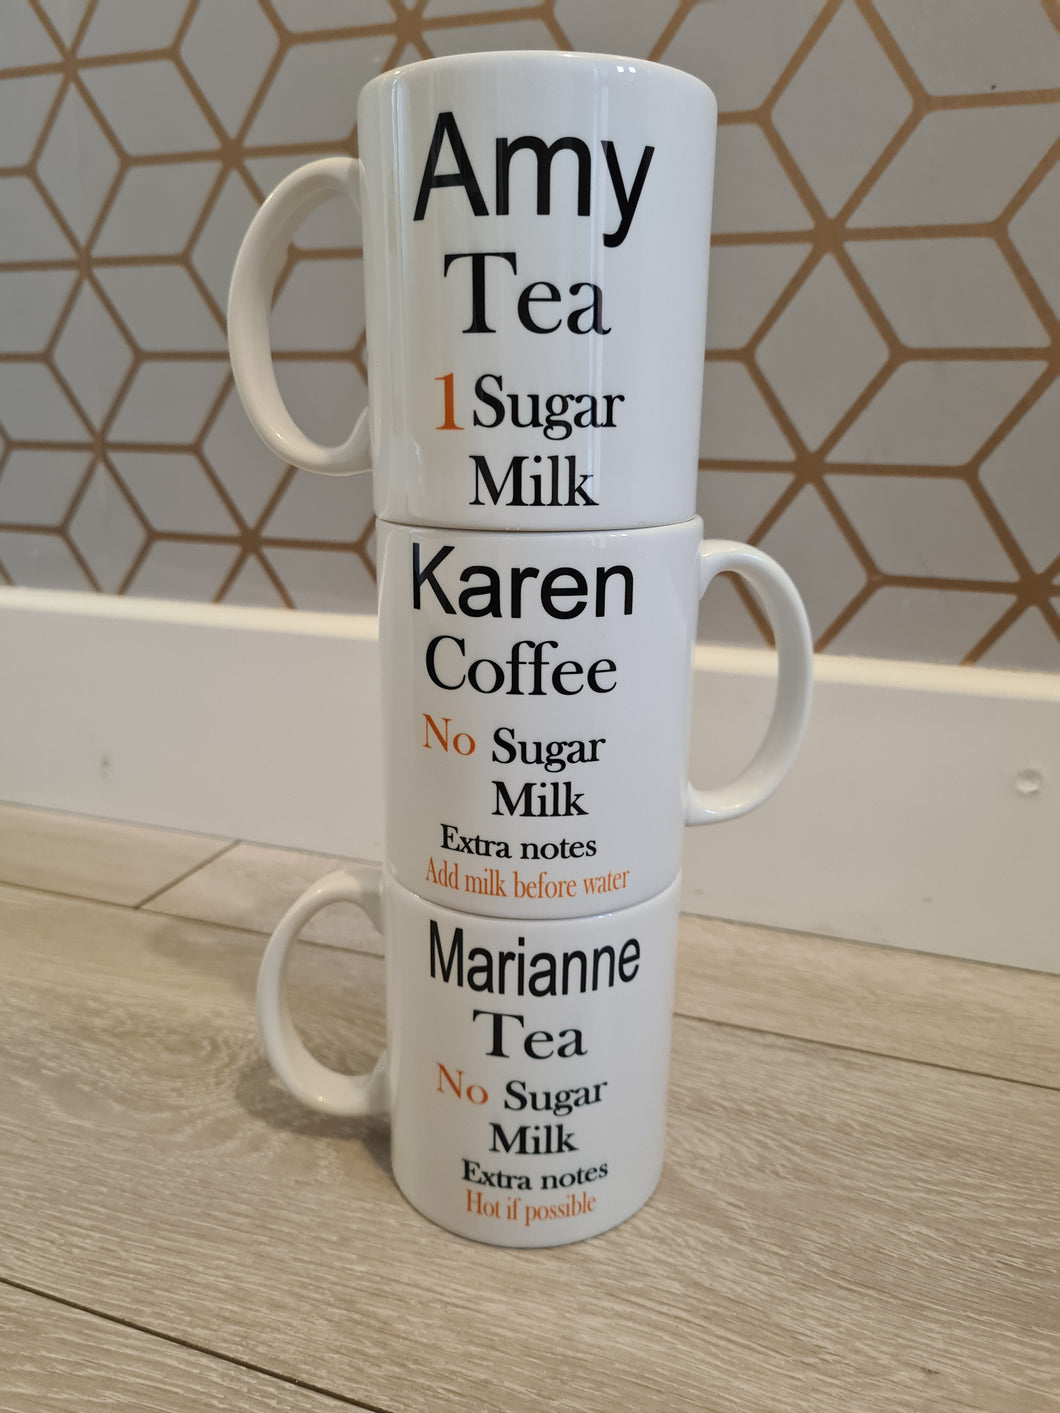 Tea/Coffee order mug